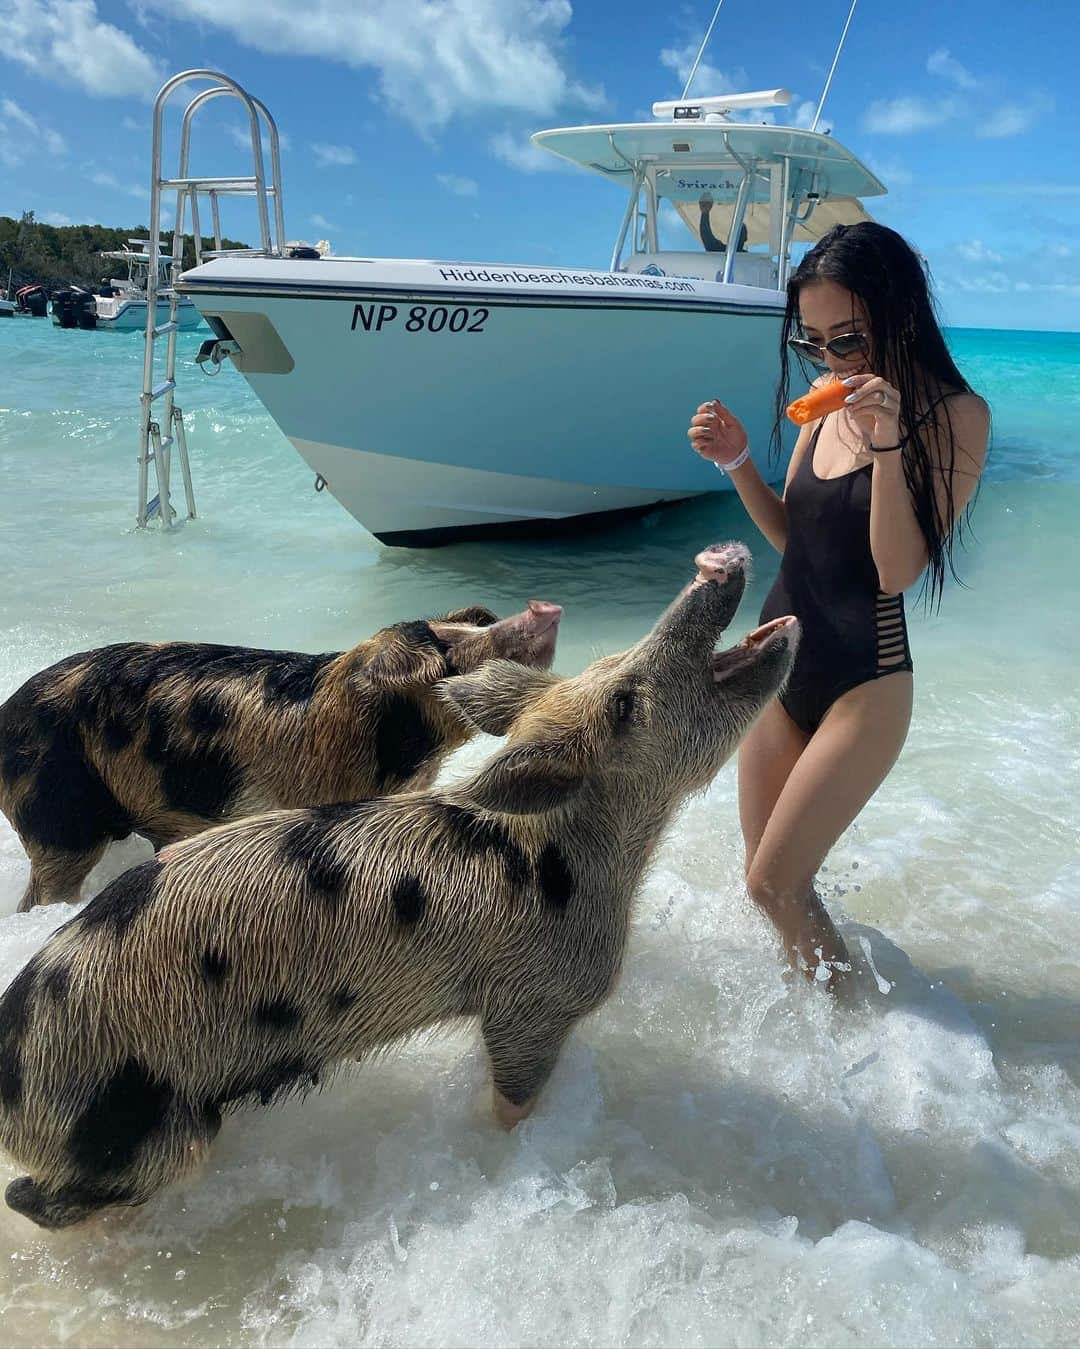 高野勇樹さんのインスタグラム写真 高野勇樹instagram ピッグビーチ バハマ には が泳ぐビーチがある 可愛すぎてキュン死 豚ビーチ バハマ 豚が泳ぐ カリブ海 Bahamas 珍動物 豚 世界の絶景 世界旅行 世界一周 旅 旅行好きな人